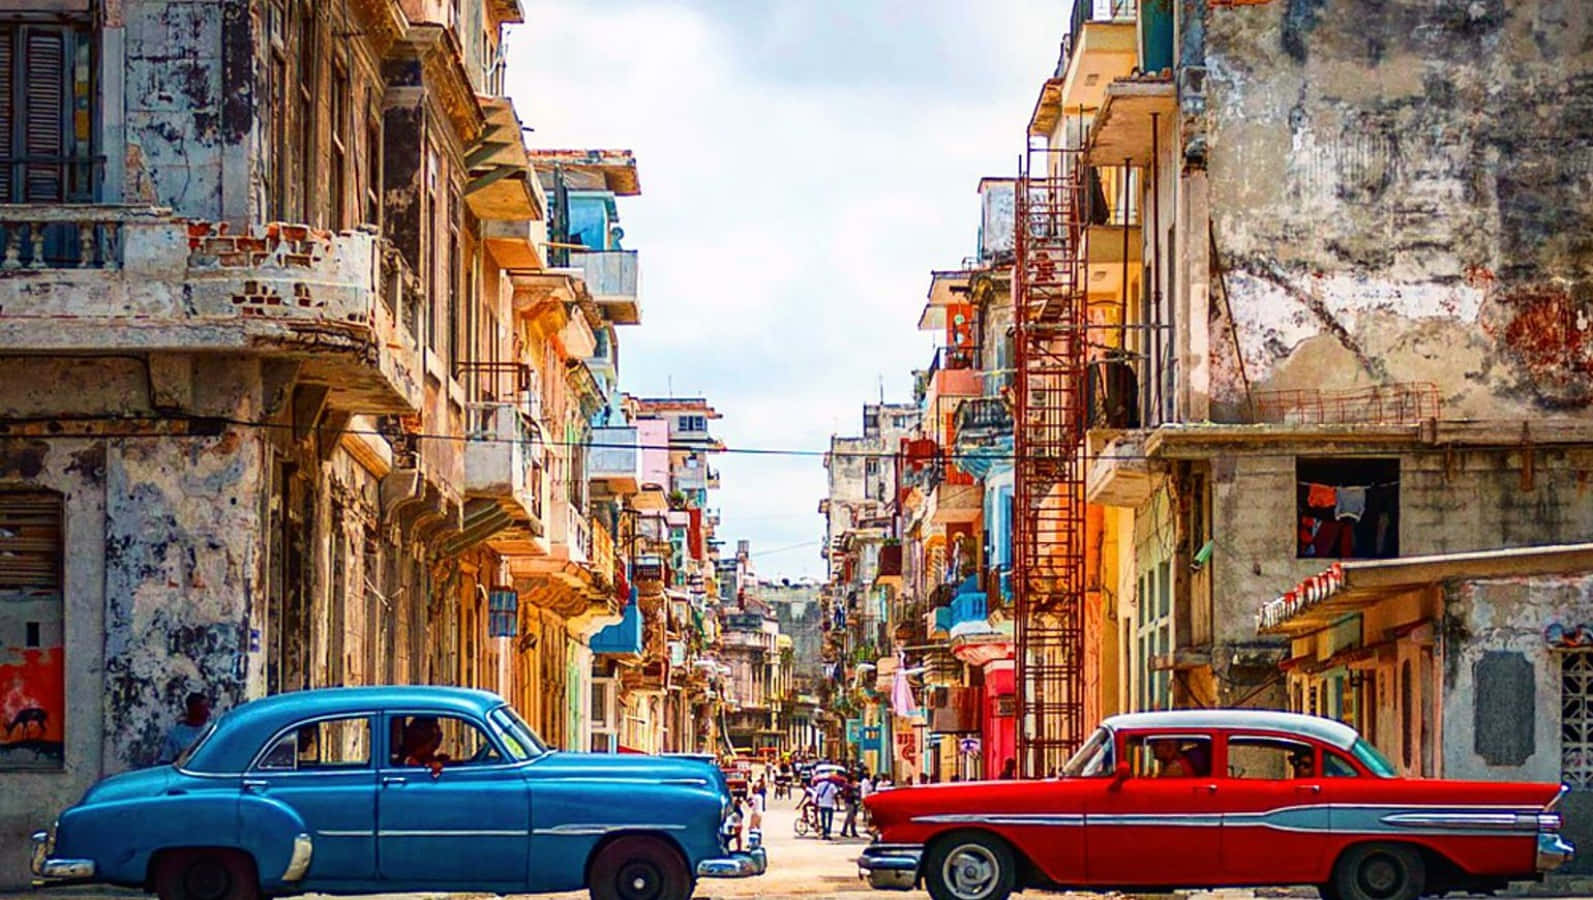 Unaanimada Escena En Las Calles De La Habana Vieja, Cuba.